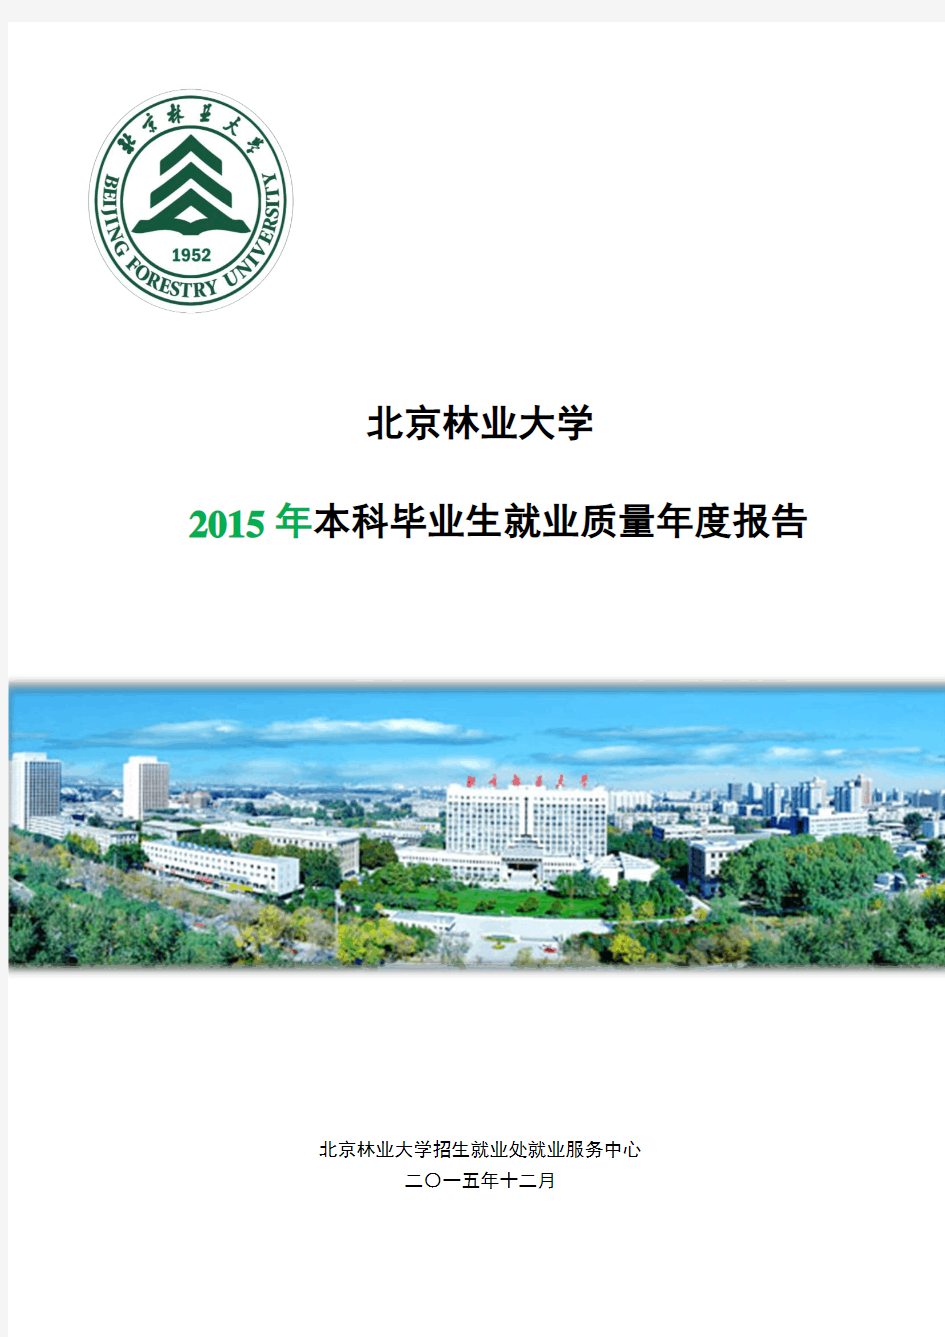 北京林业大学2015年本科毕业生就业质量年度报告